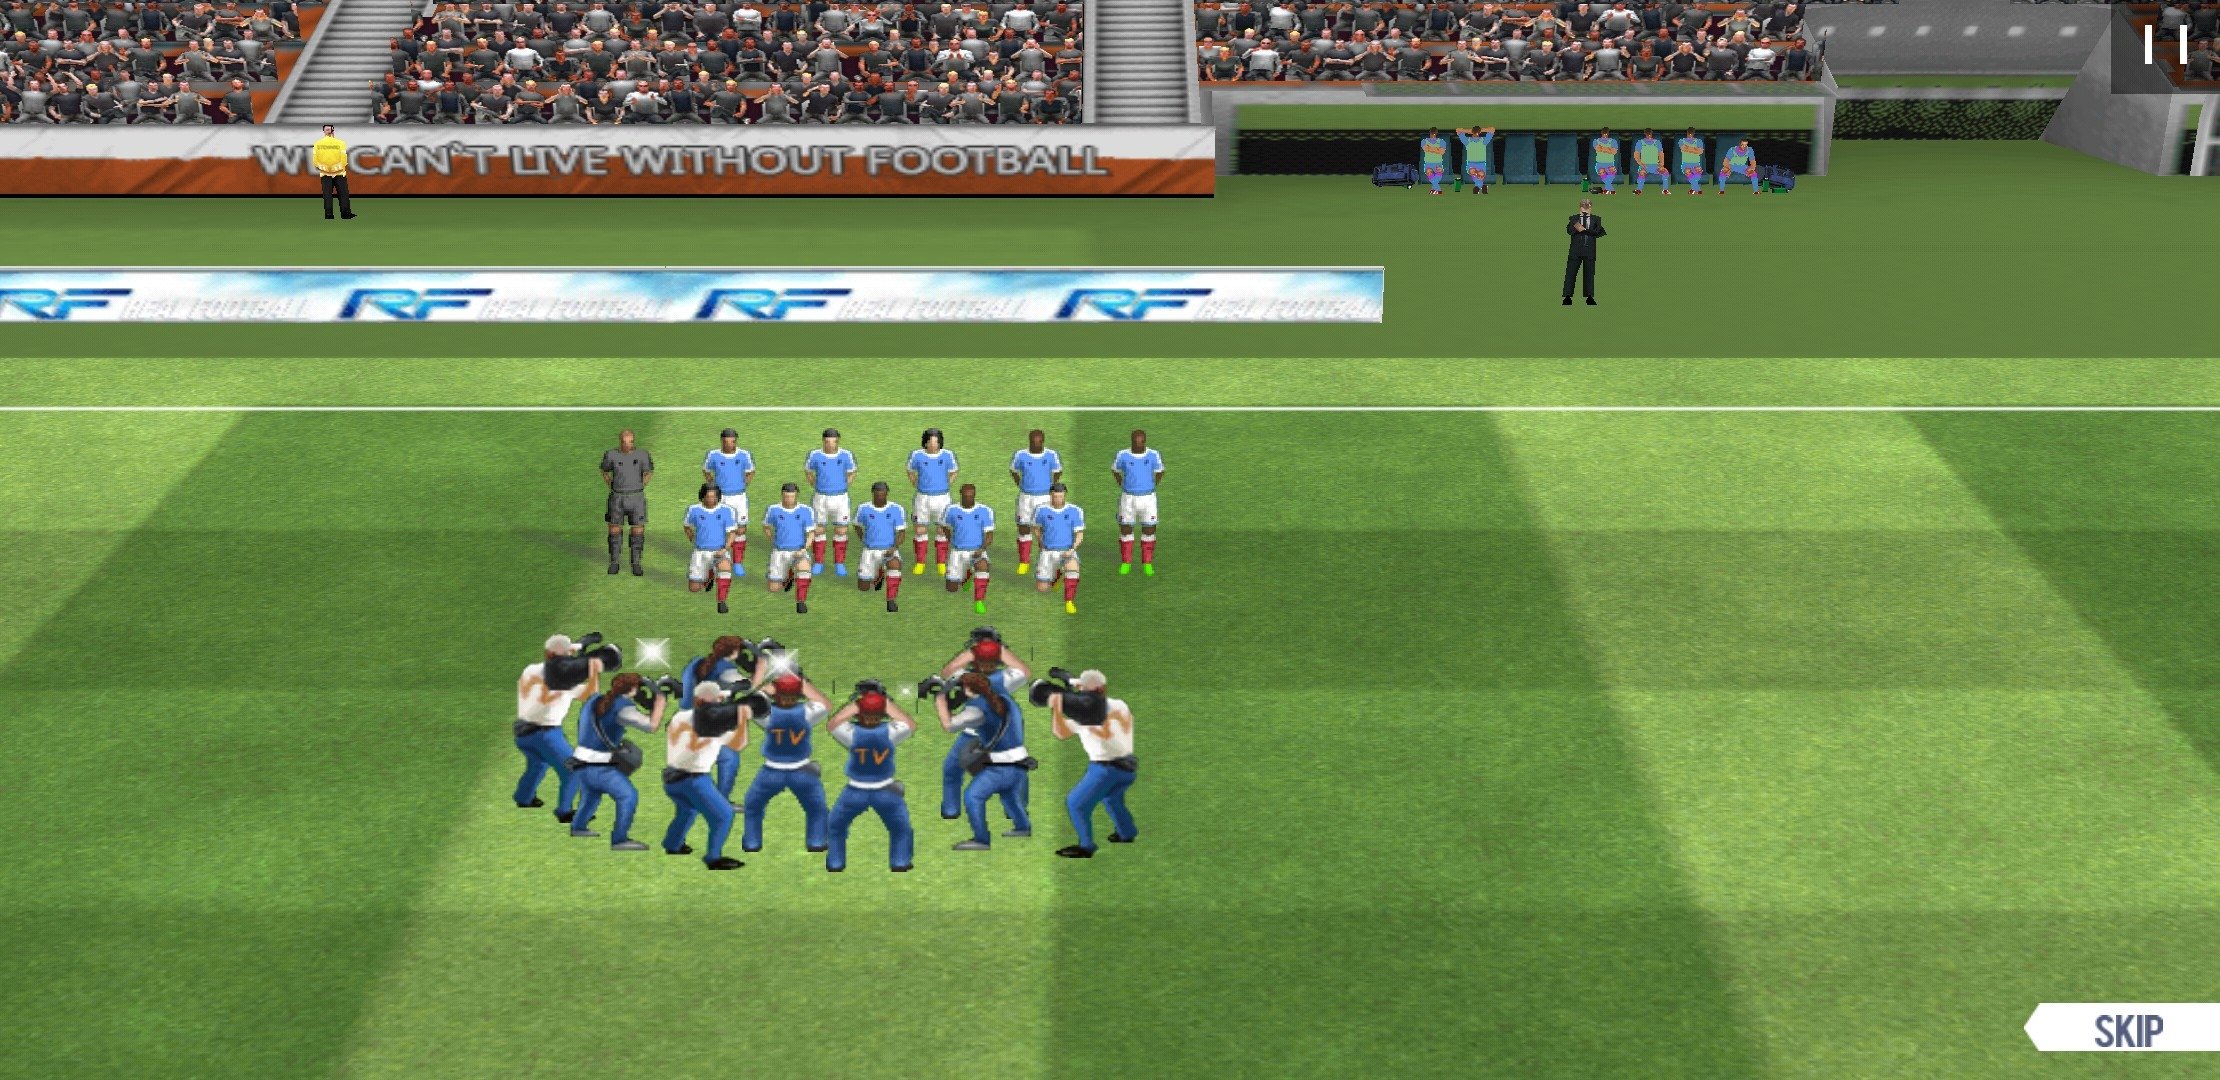 Jogo Real Football no Jogos 360